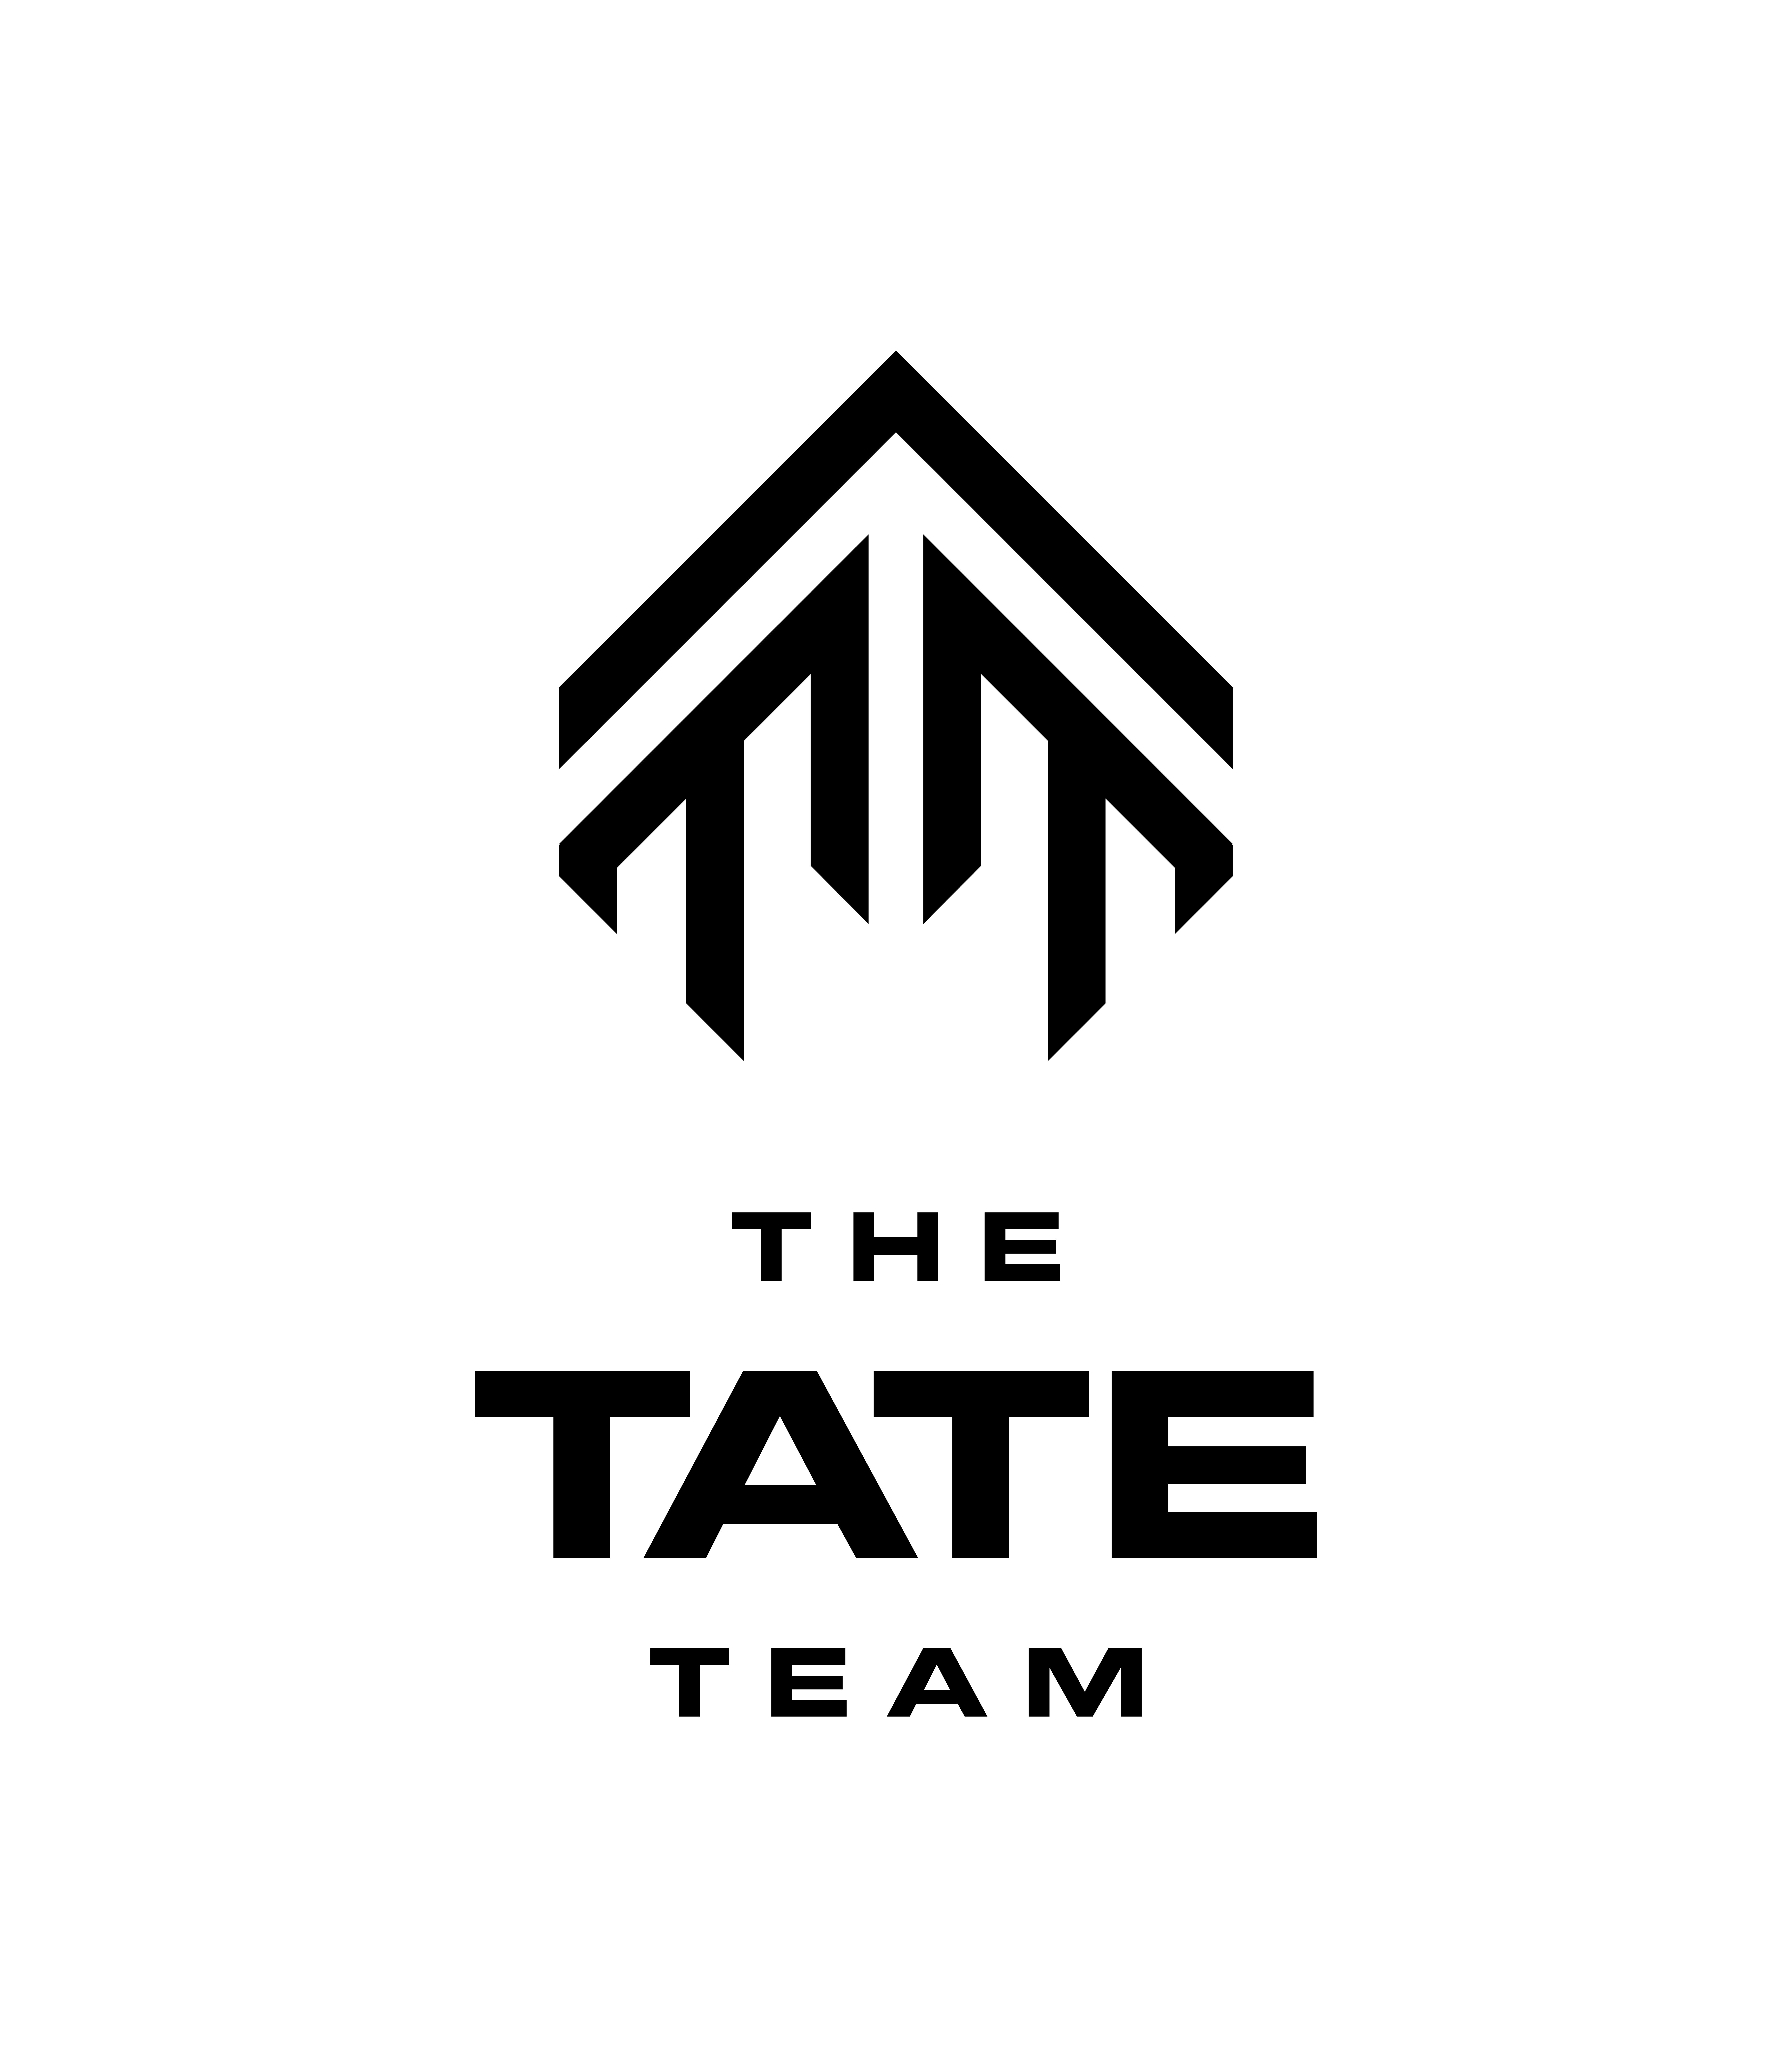  THE TATE TEAM